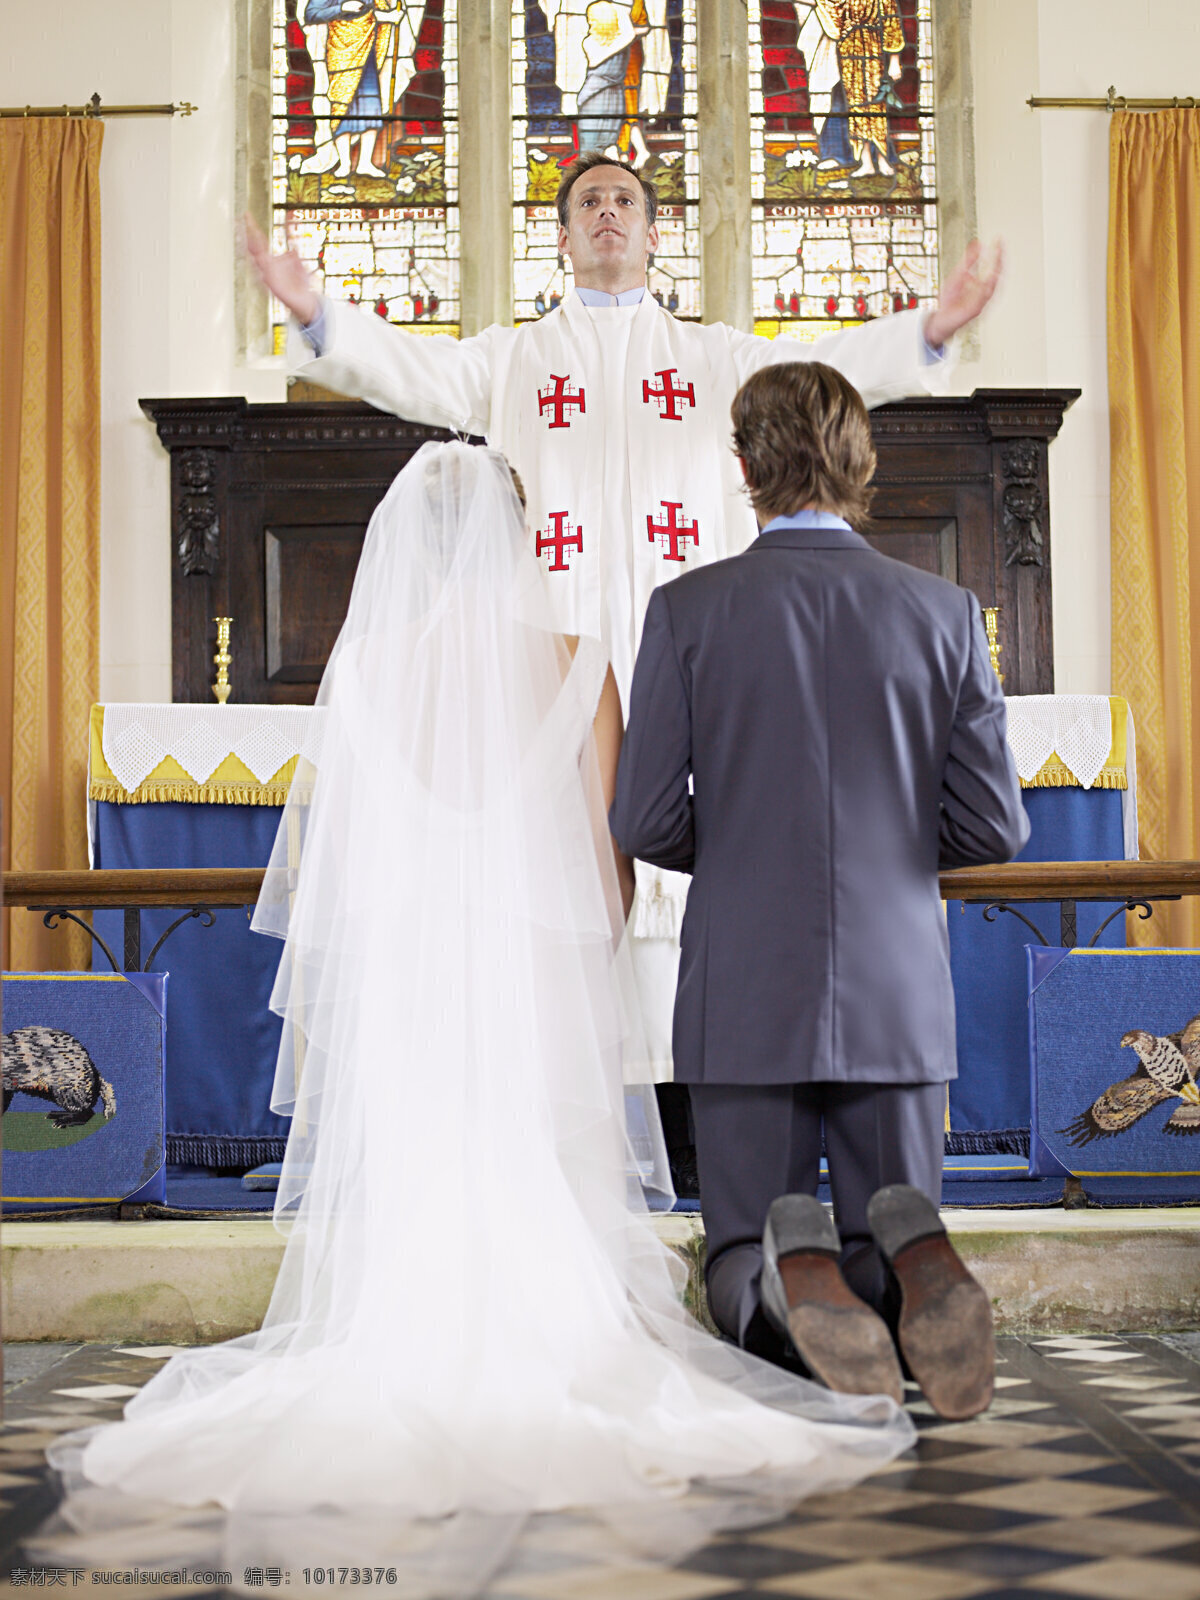 跪 神父 面前 新人 男人 女人 婚礼 婚纱 浪漫 西式婚礼 教堂 情侣图片 人物图片